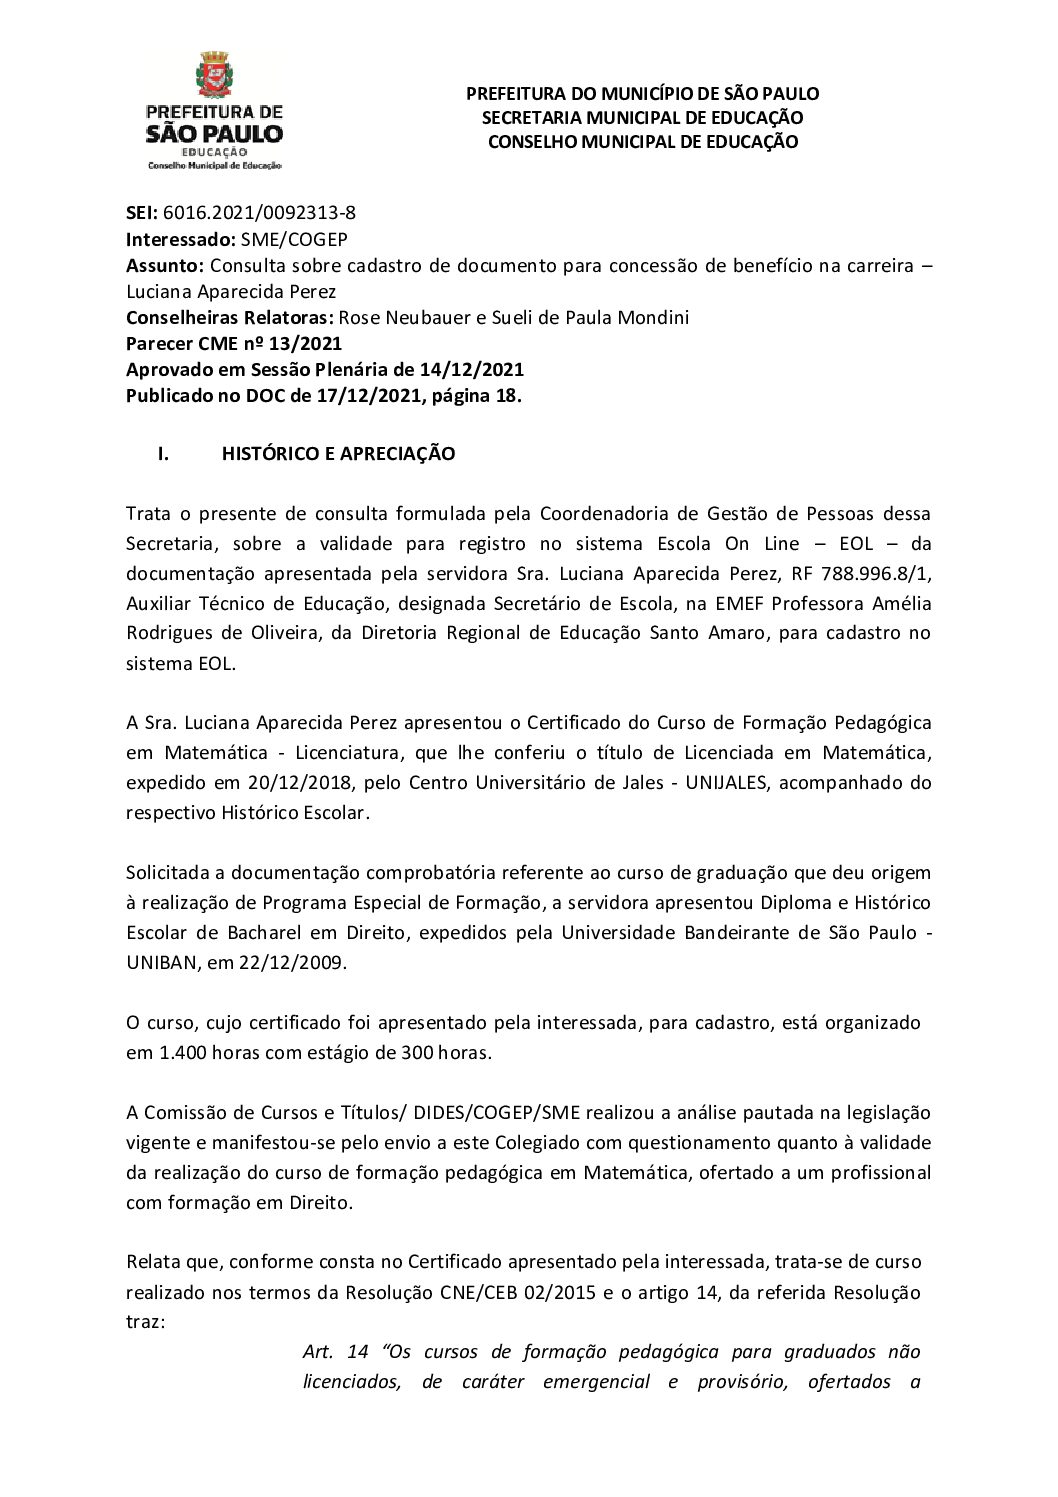 Parecer CME nº 13/2021- Consulta SME/COGEP sobre cadastro de documento para concessão de benefício na carreira – Luciana Aparecida Perez 